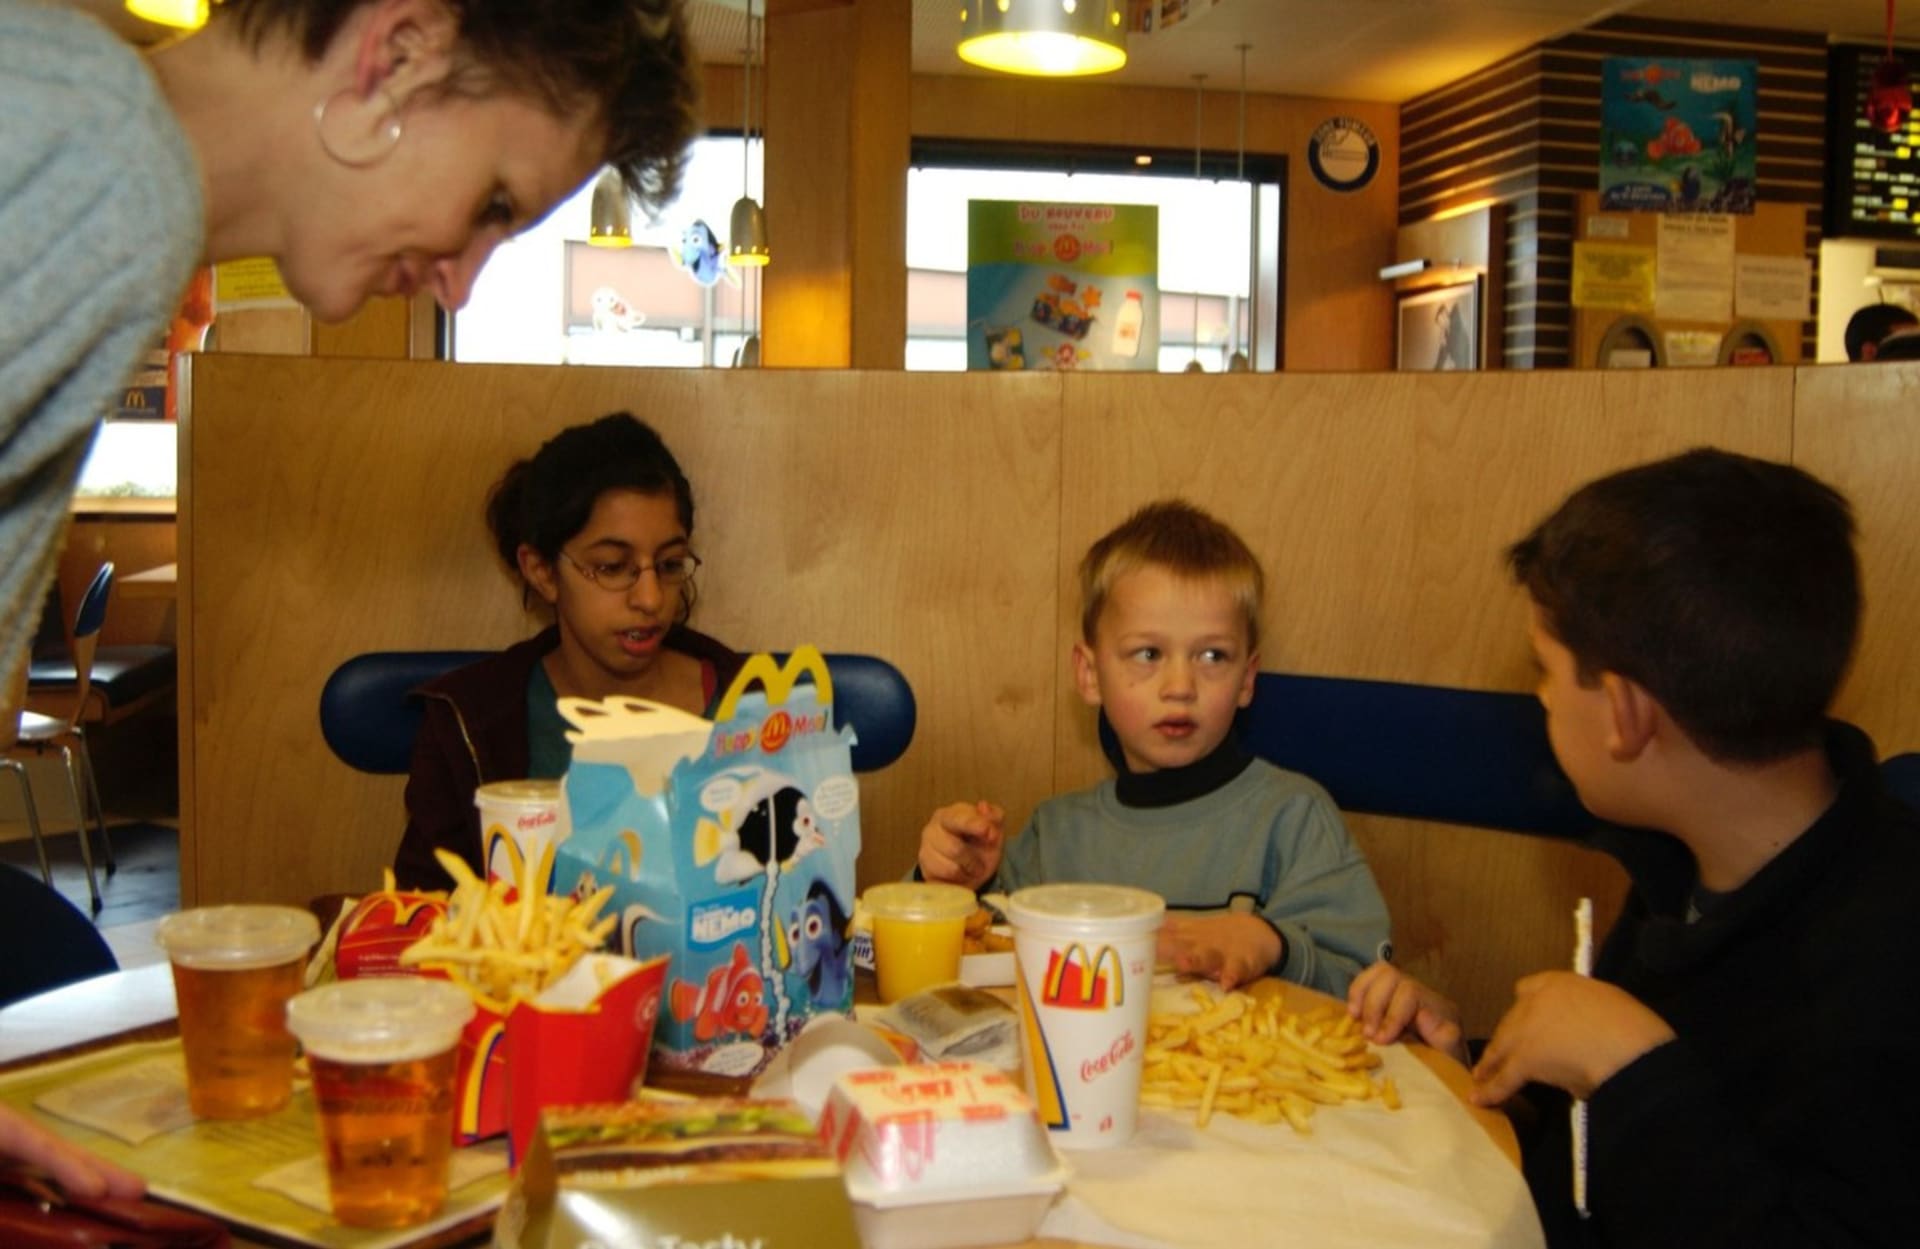 Restaurace Podolská kotva má být údajně vůči dětem nepřizpůsobivá.